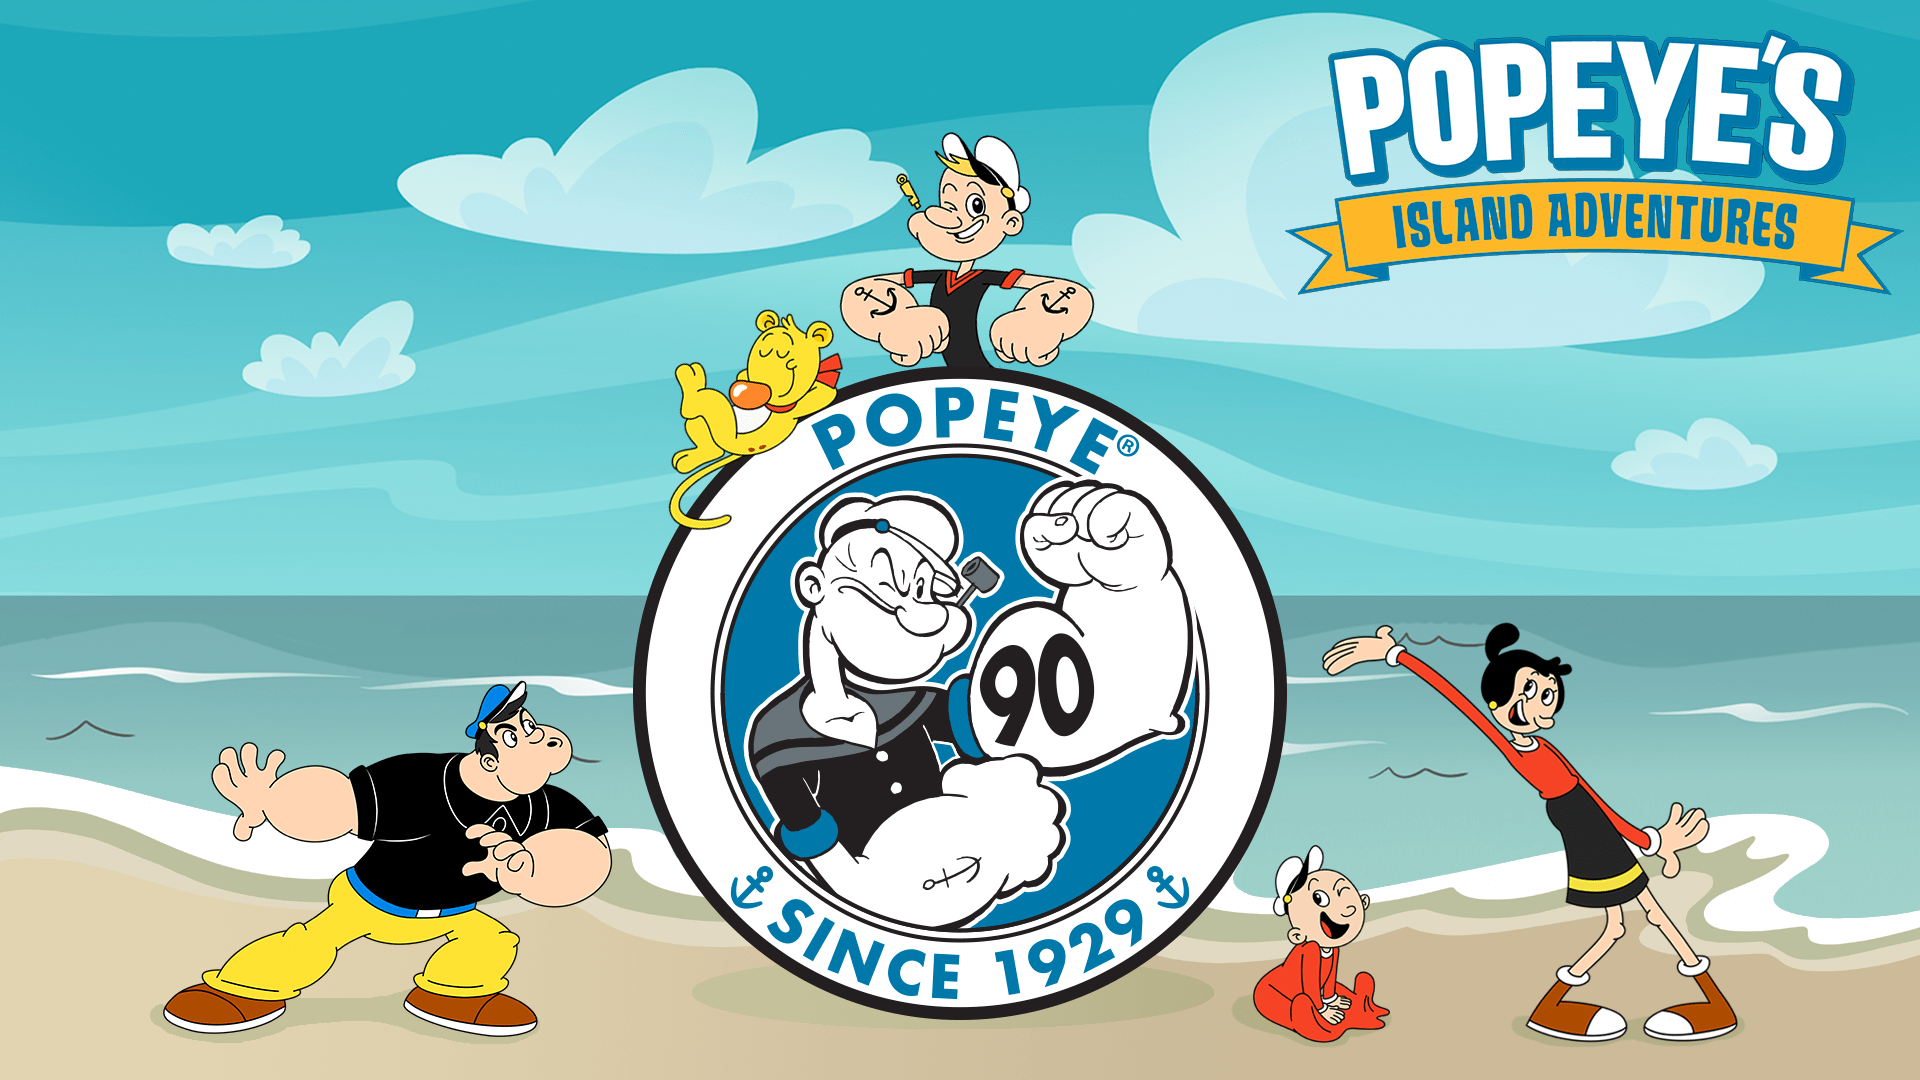 Popeye's island adventures. 